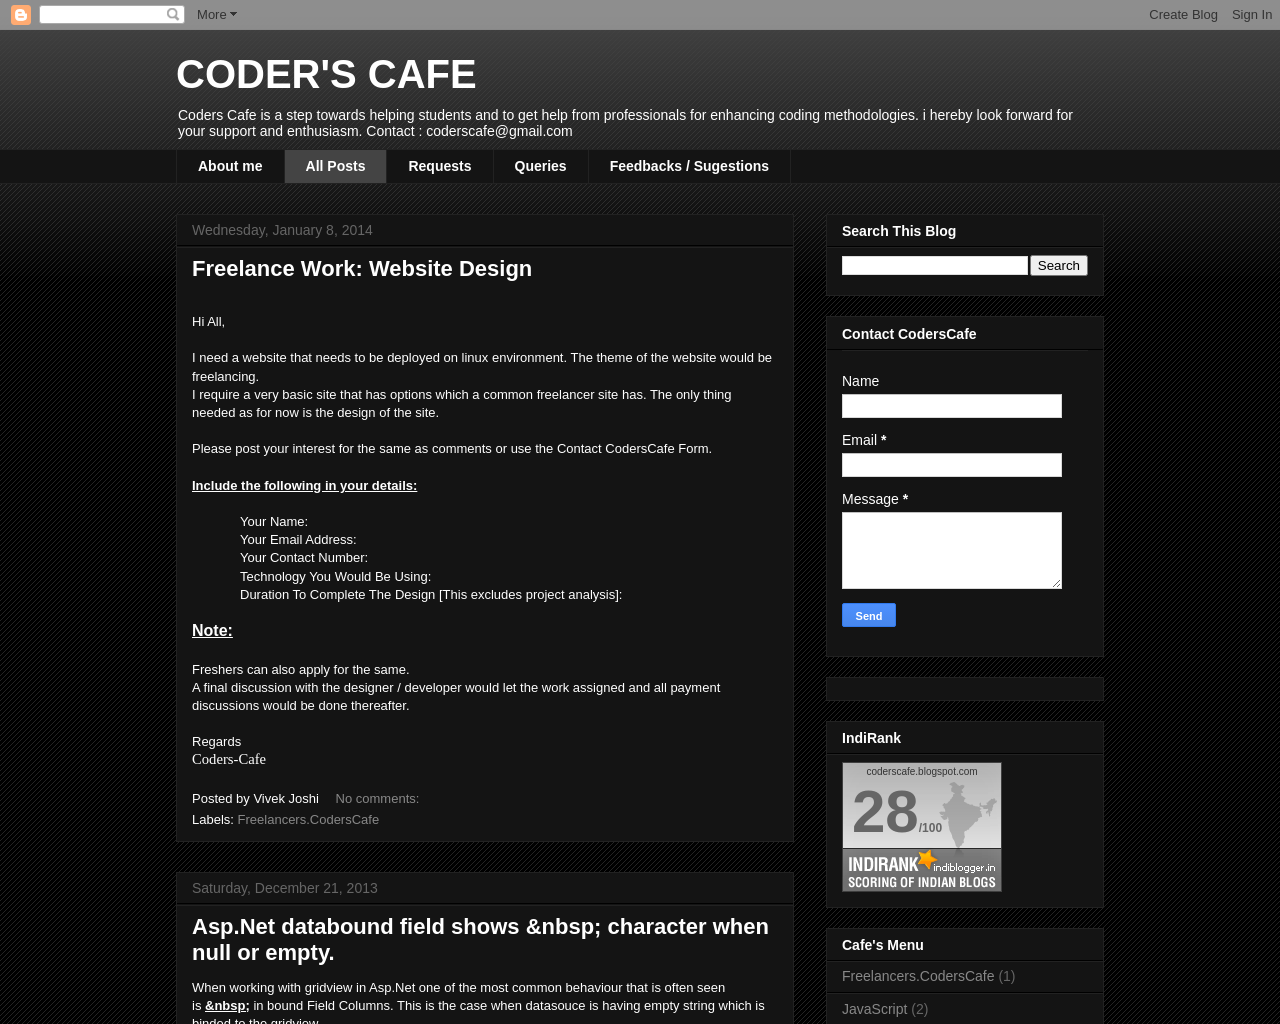 Coder's Cafe